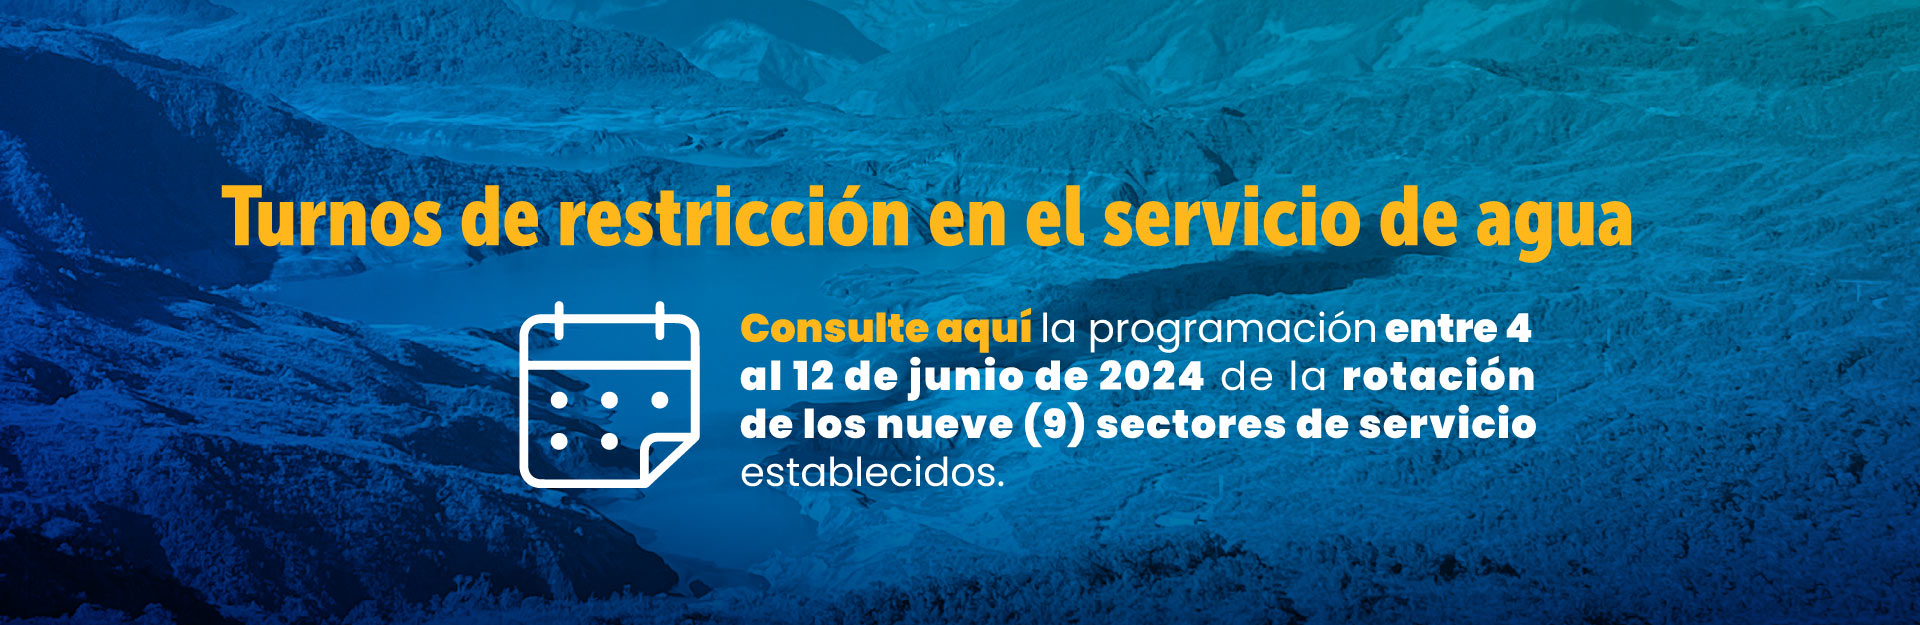 Turnos de restricción en el servicio de agua | programación entre 4 al 12 de junio de 2024